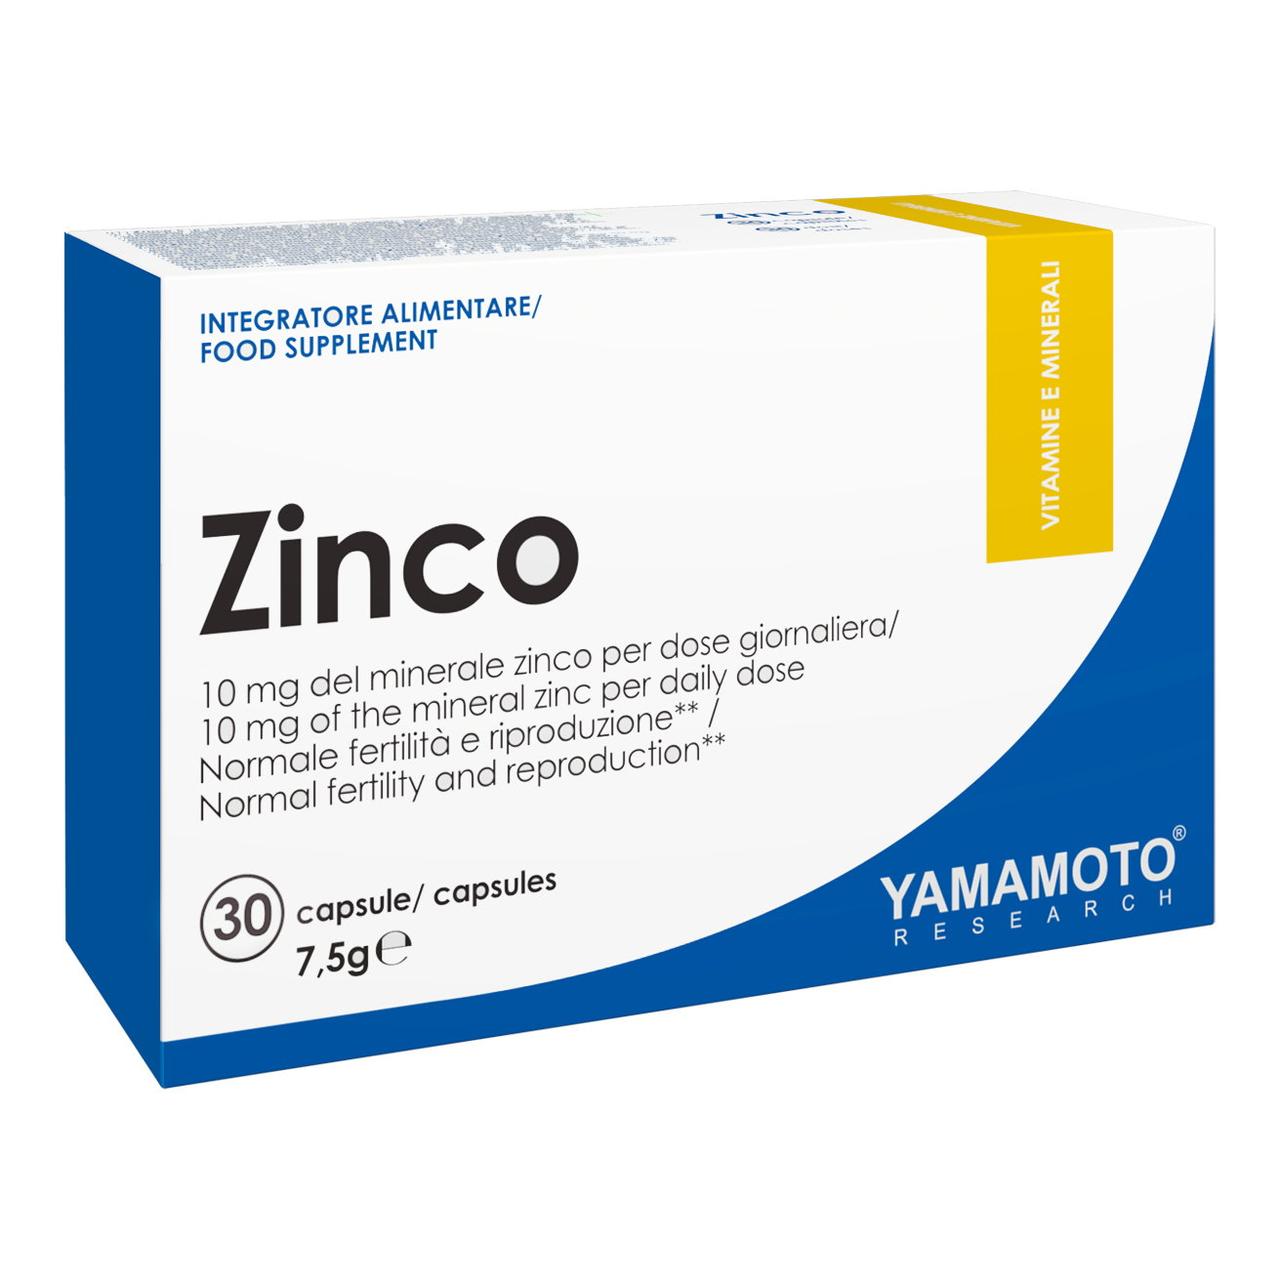 Yamamoto Nutrition Цинк Yamamoto nutrition Zinco 30 капсул, , 